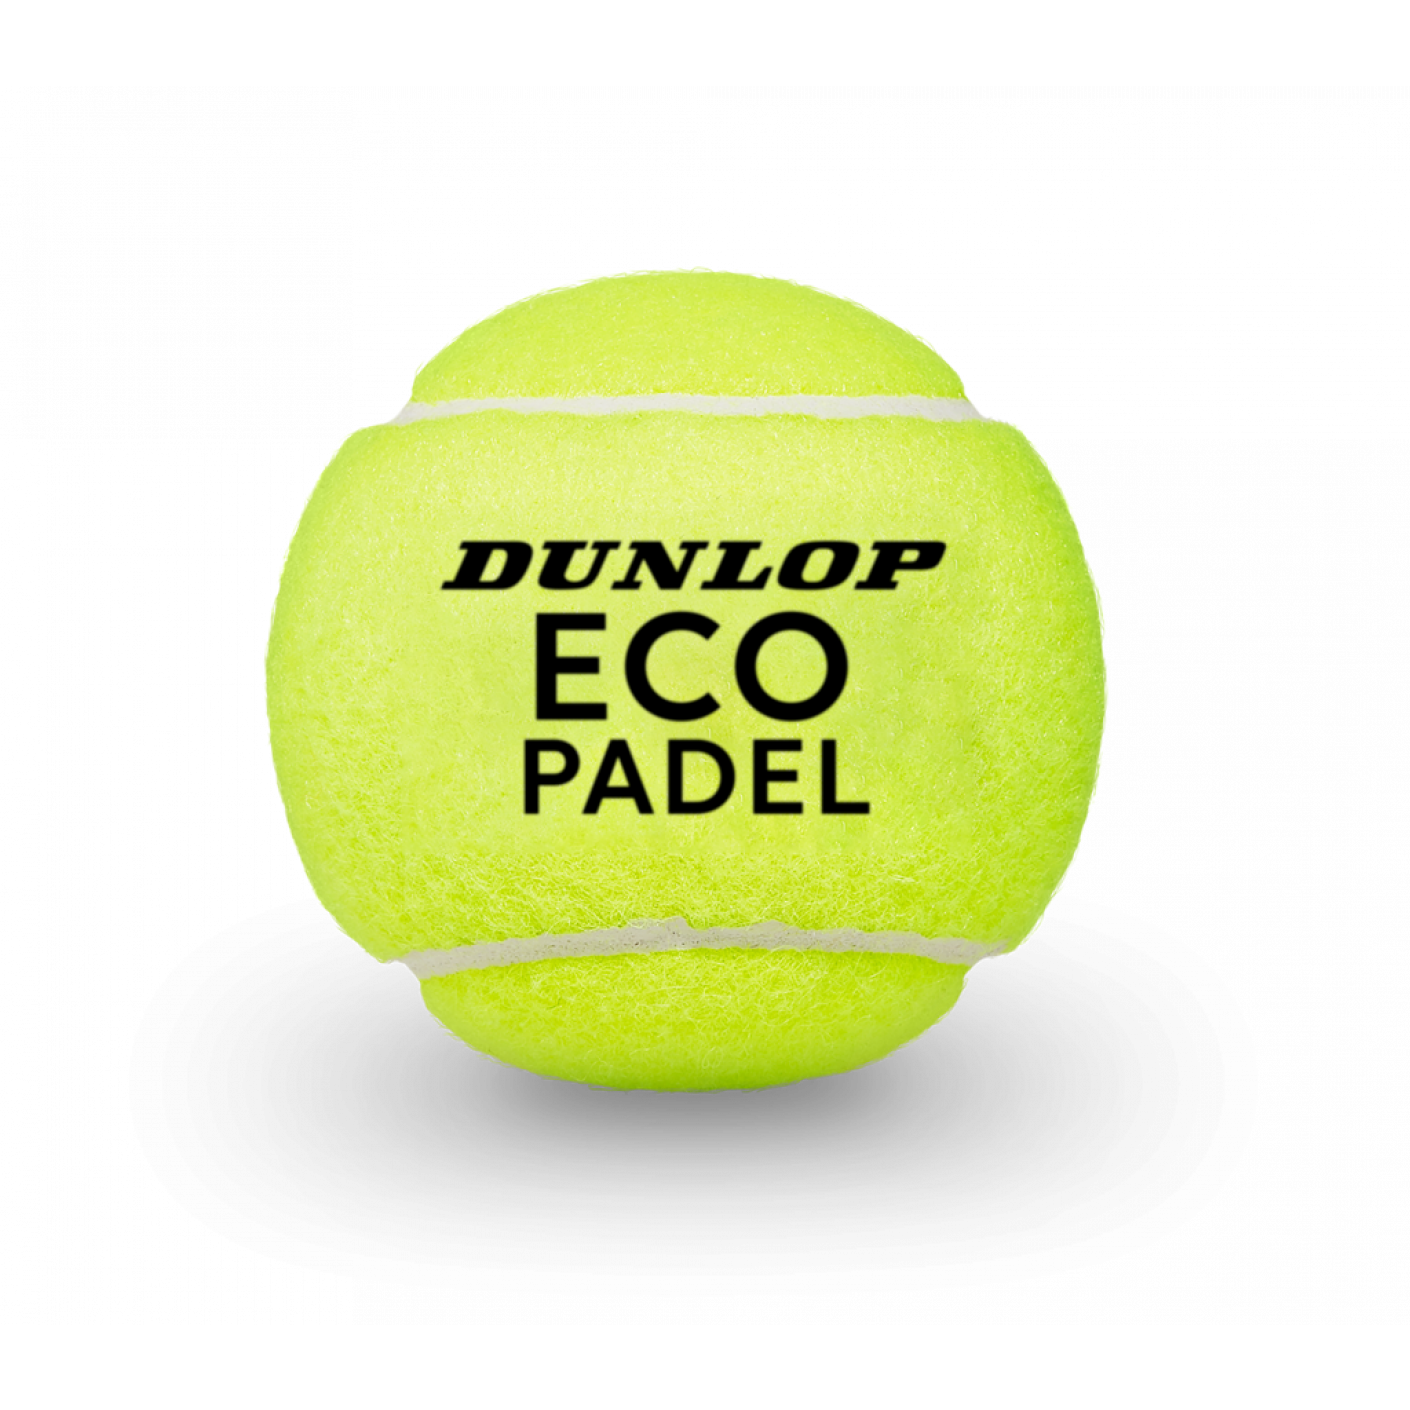 Dunlop Eco Padel 3 EU